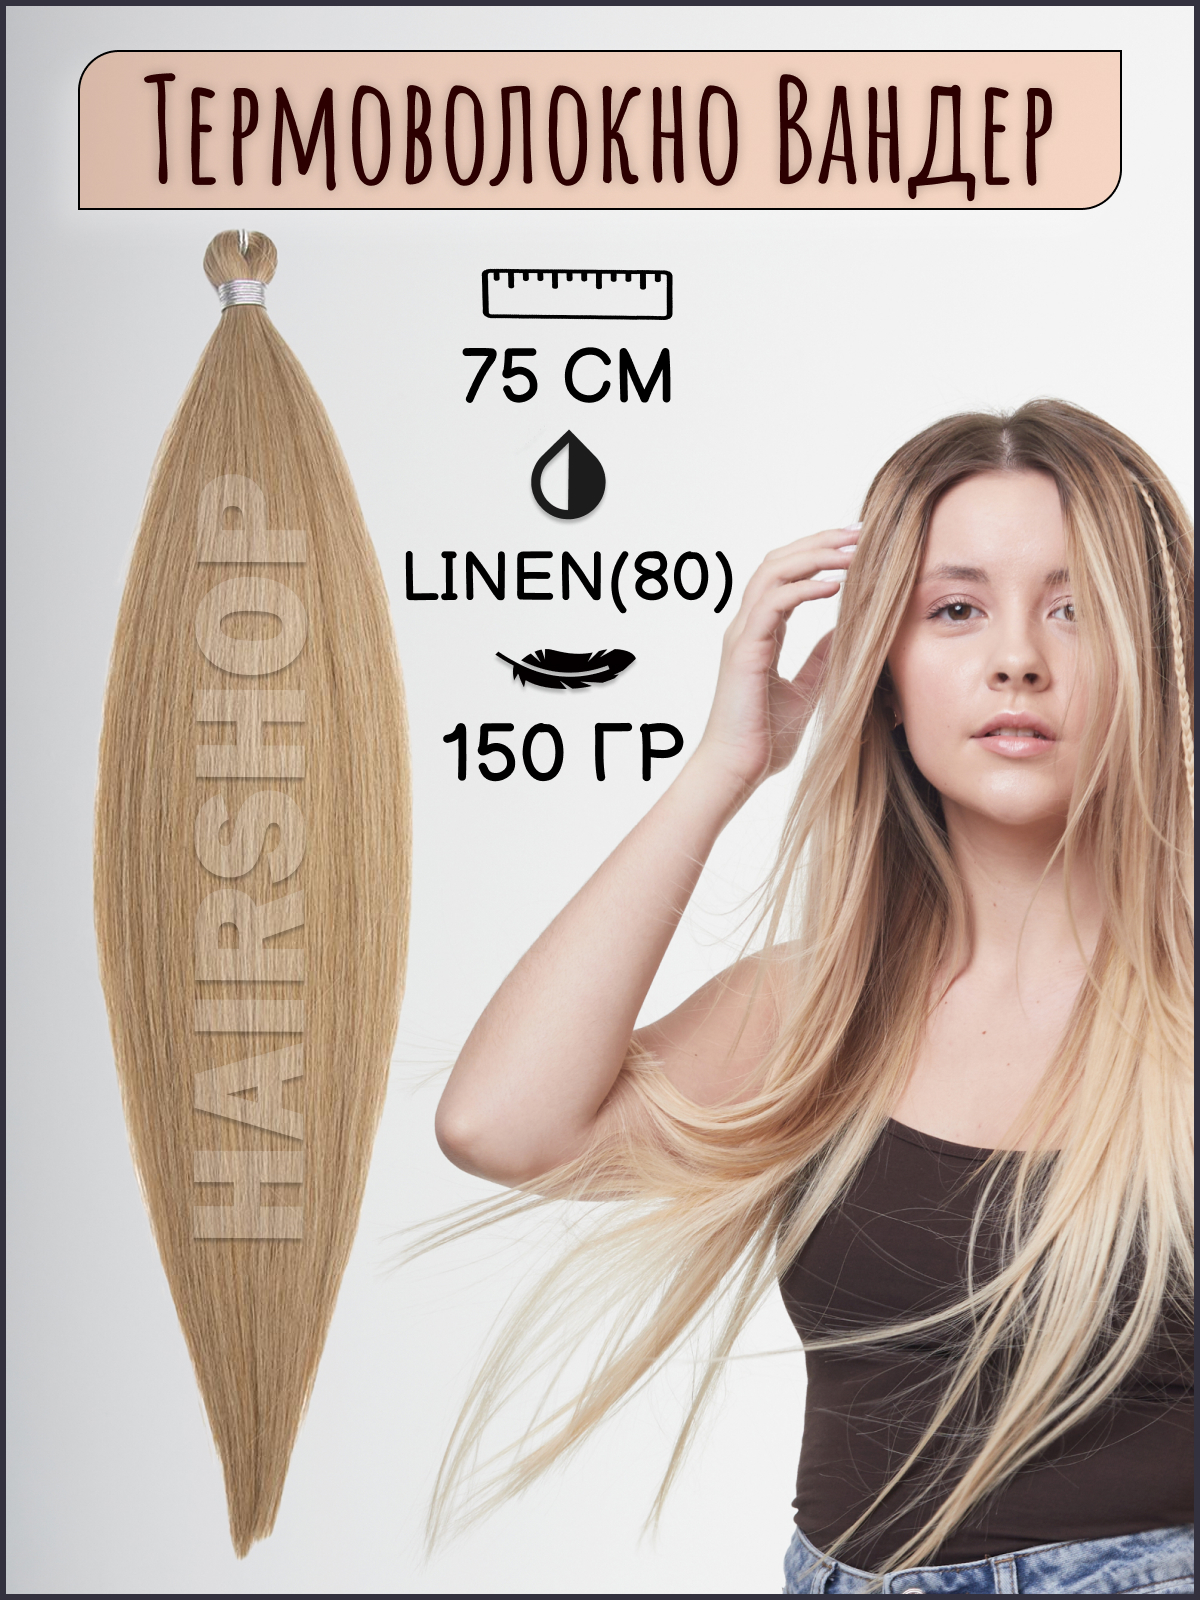 Термоволокно для наращивания Hairshop Вандер Linen 80 150г 150см термоволокно для наращивания hairshop вандер 6 150г 150см